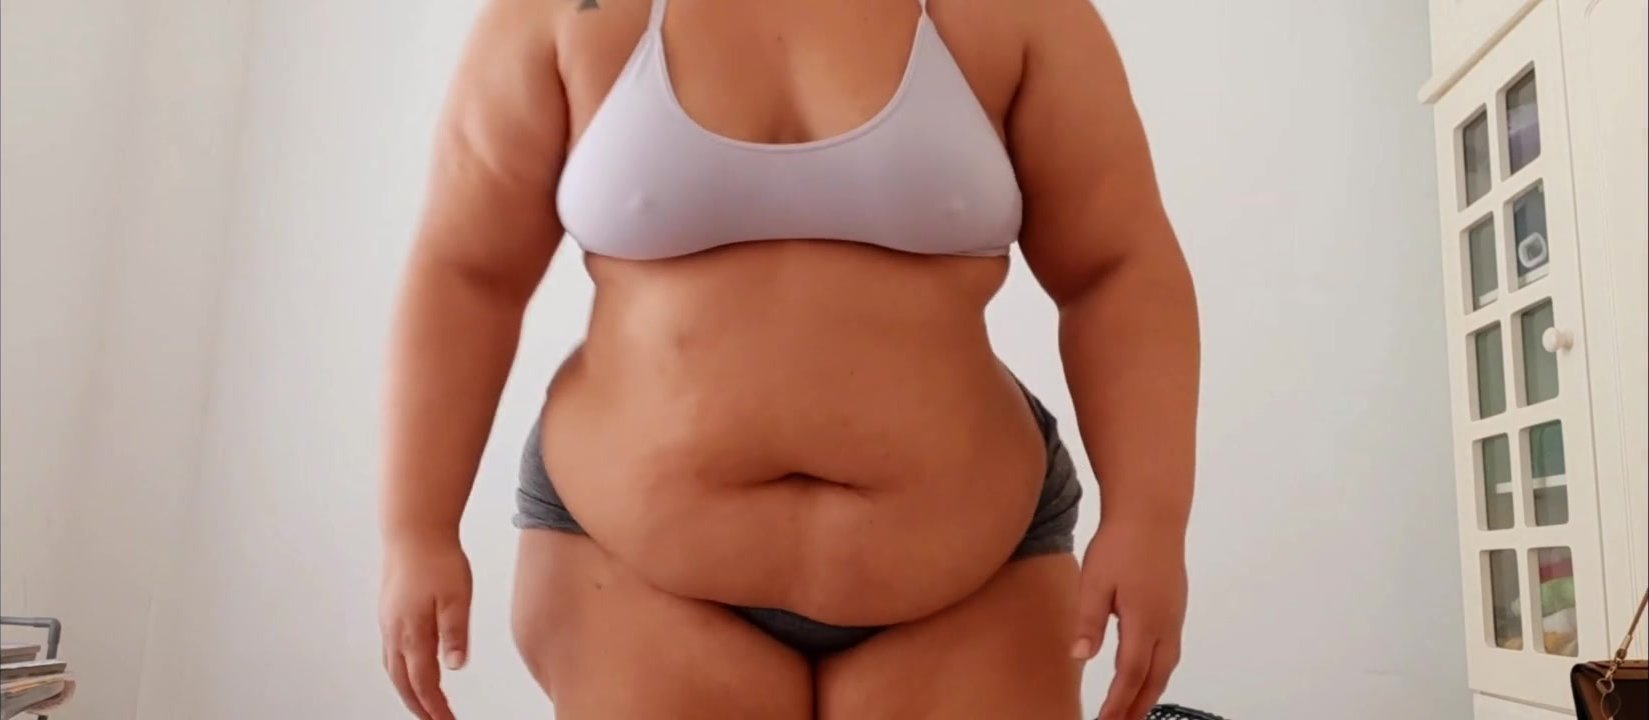 fat mature woman workout